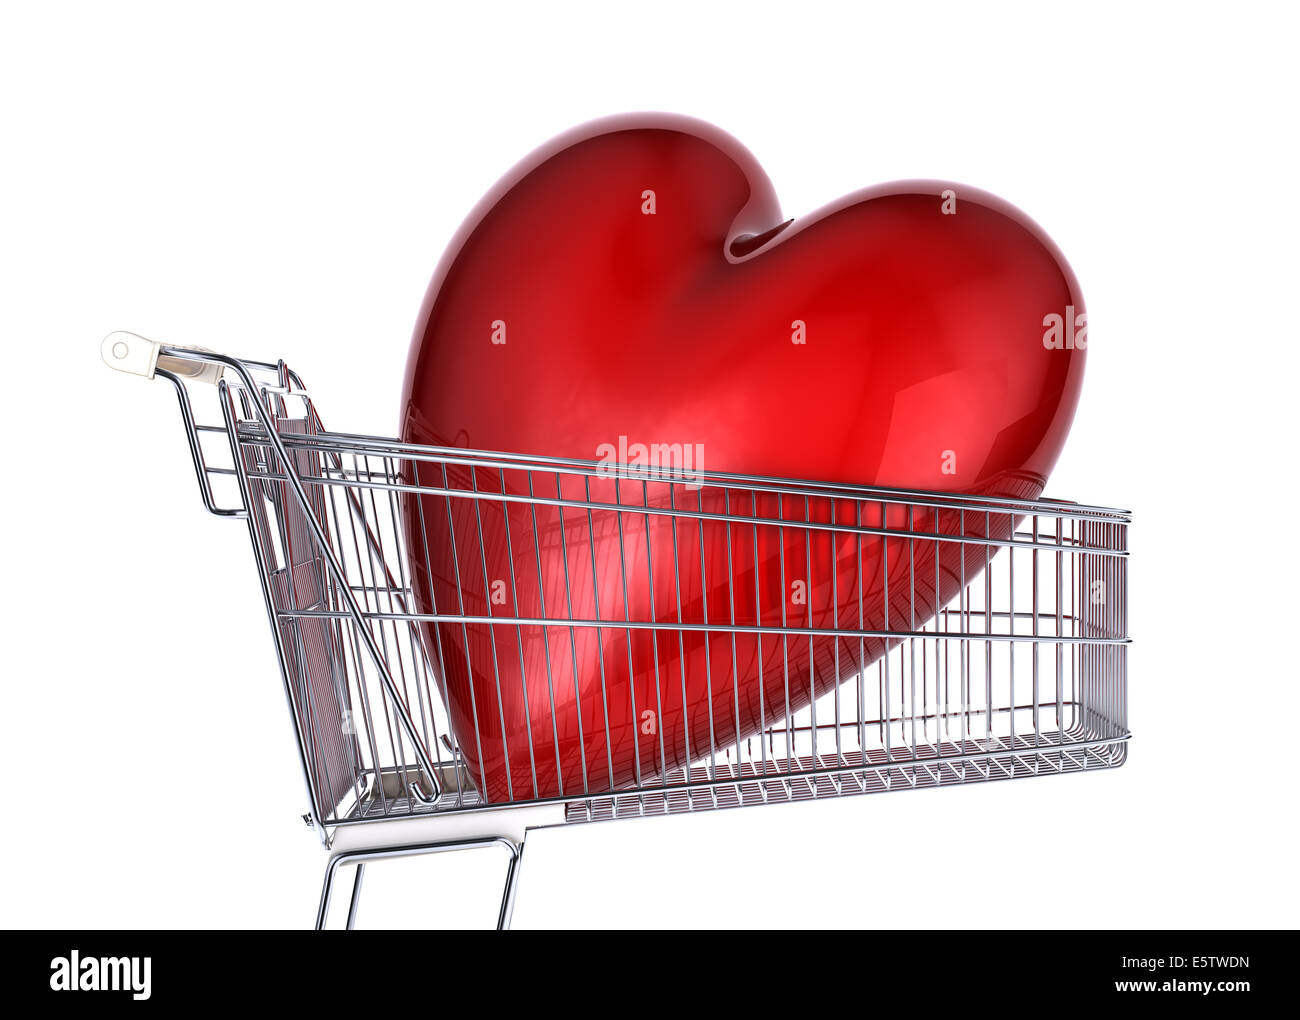 Einkaufswagen mit großen roten glänzenden Herz drin. Seitenansicht, auf weißem Hintergrund. Stockfoto